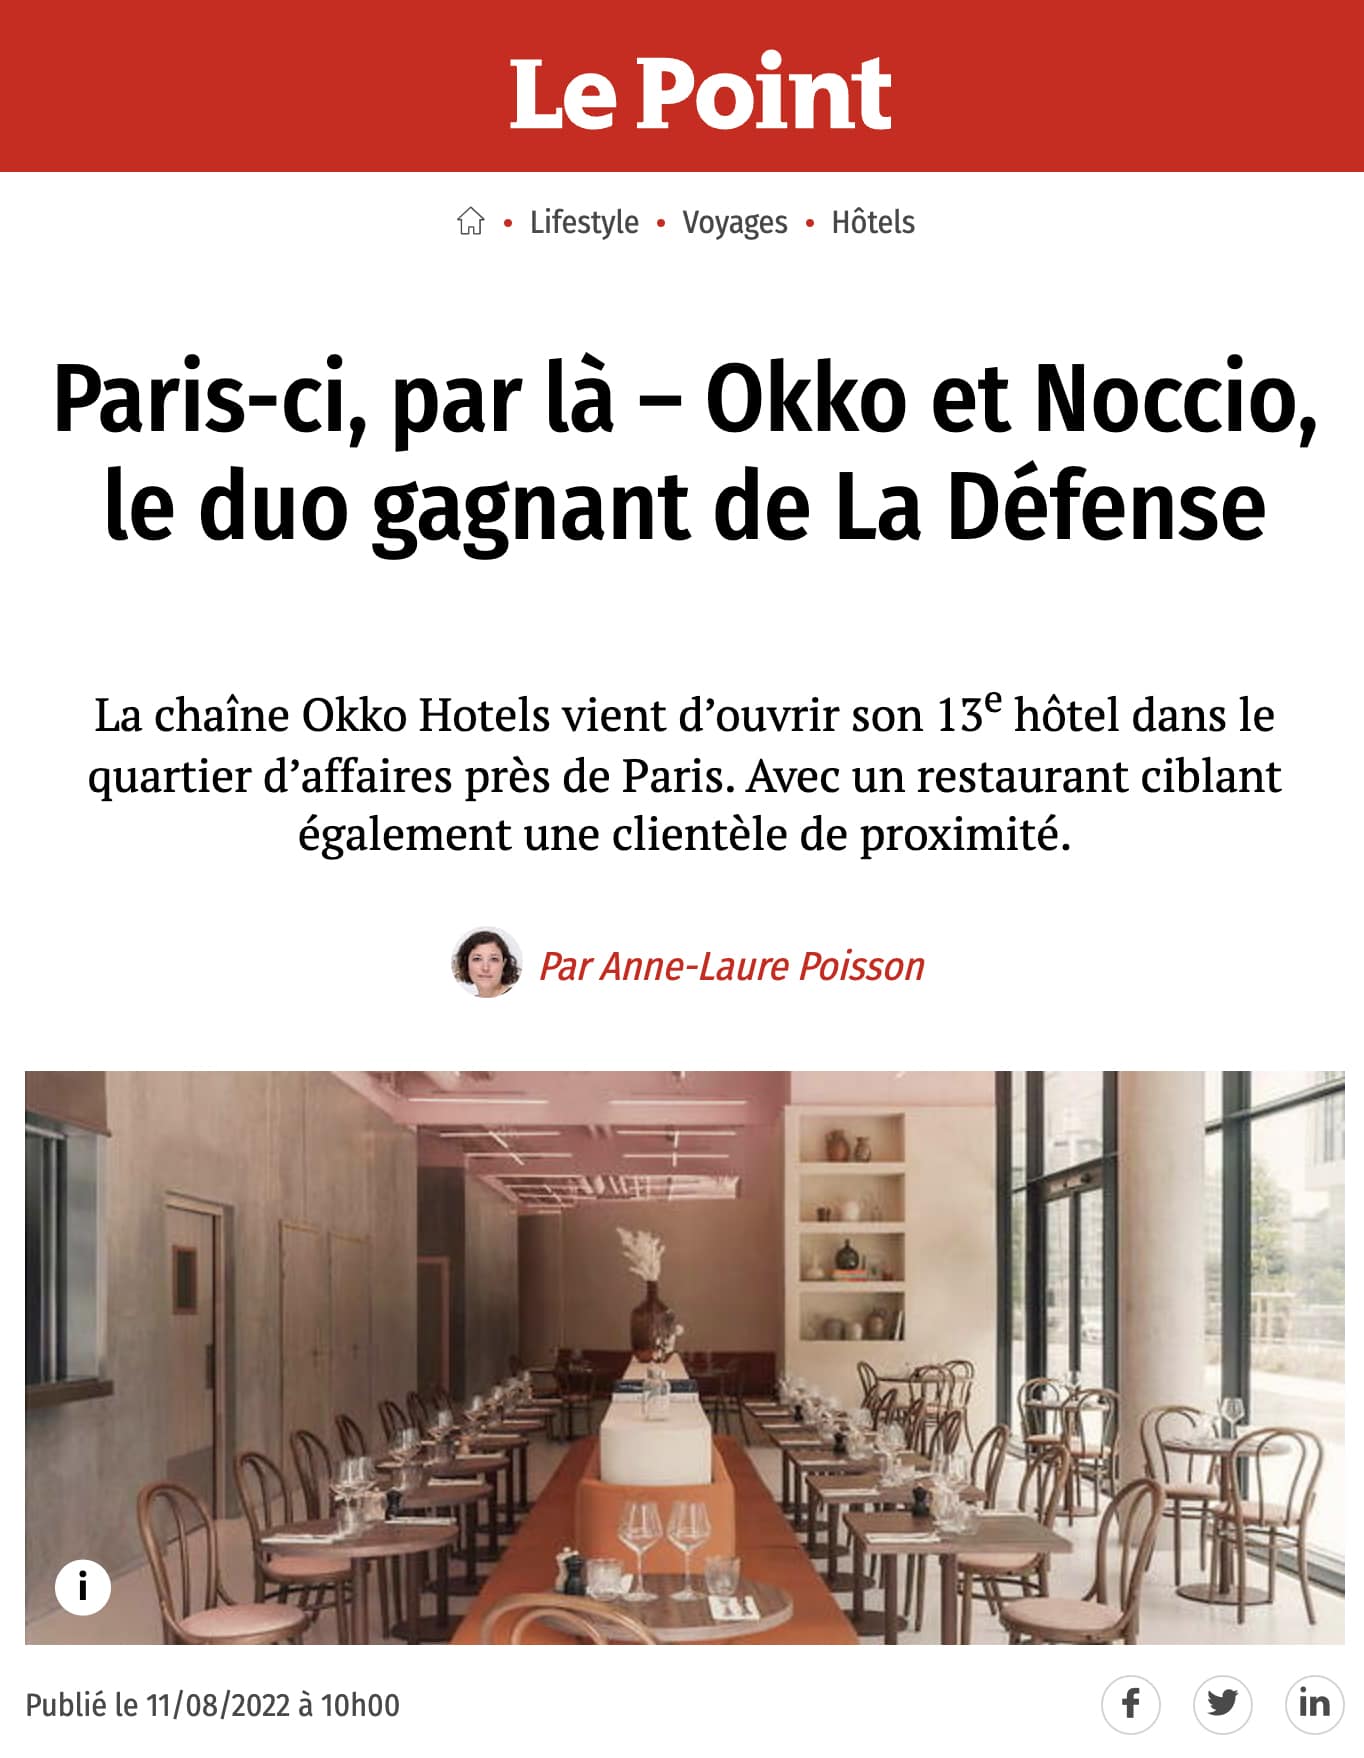 Le Point Paris ci par la – Okko et Noccio le duo gagnant de La Defense